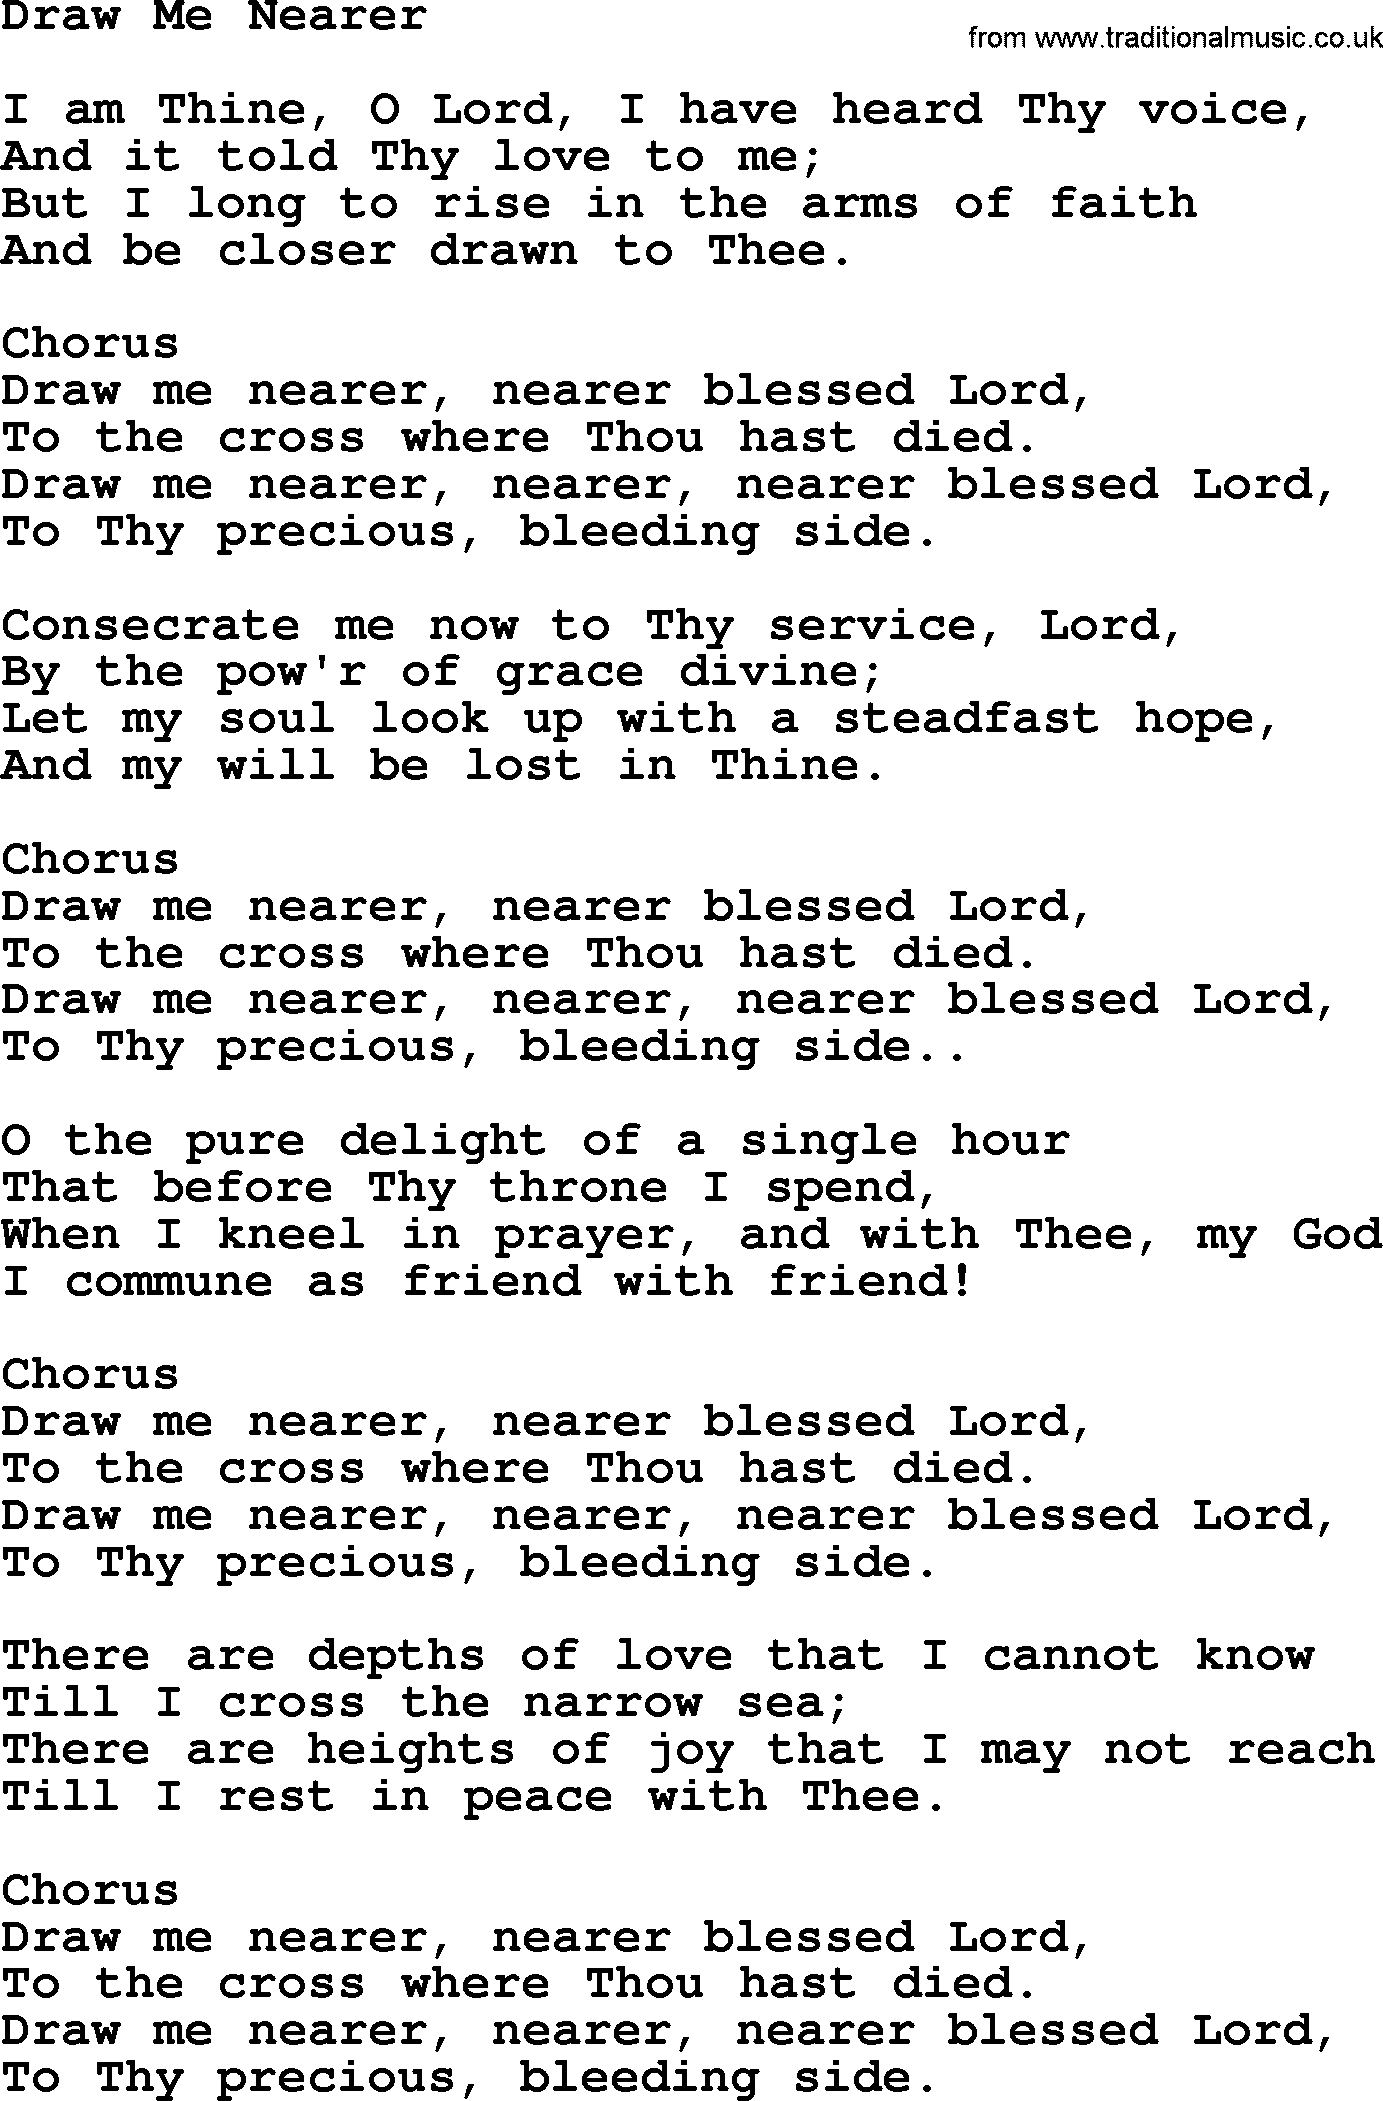 Baptist Hymnal Hymn: Draw Me Nearer, lyrics with pdf